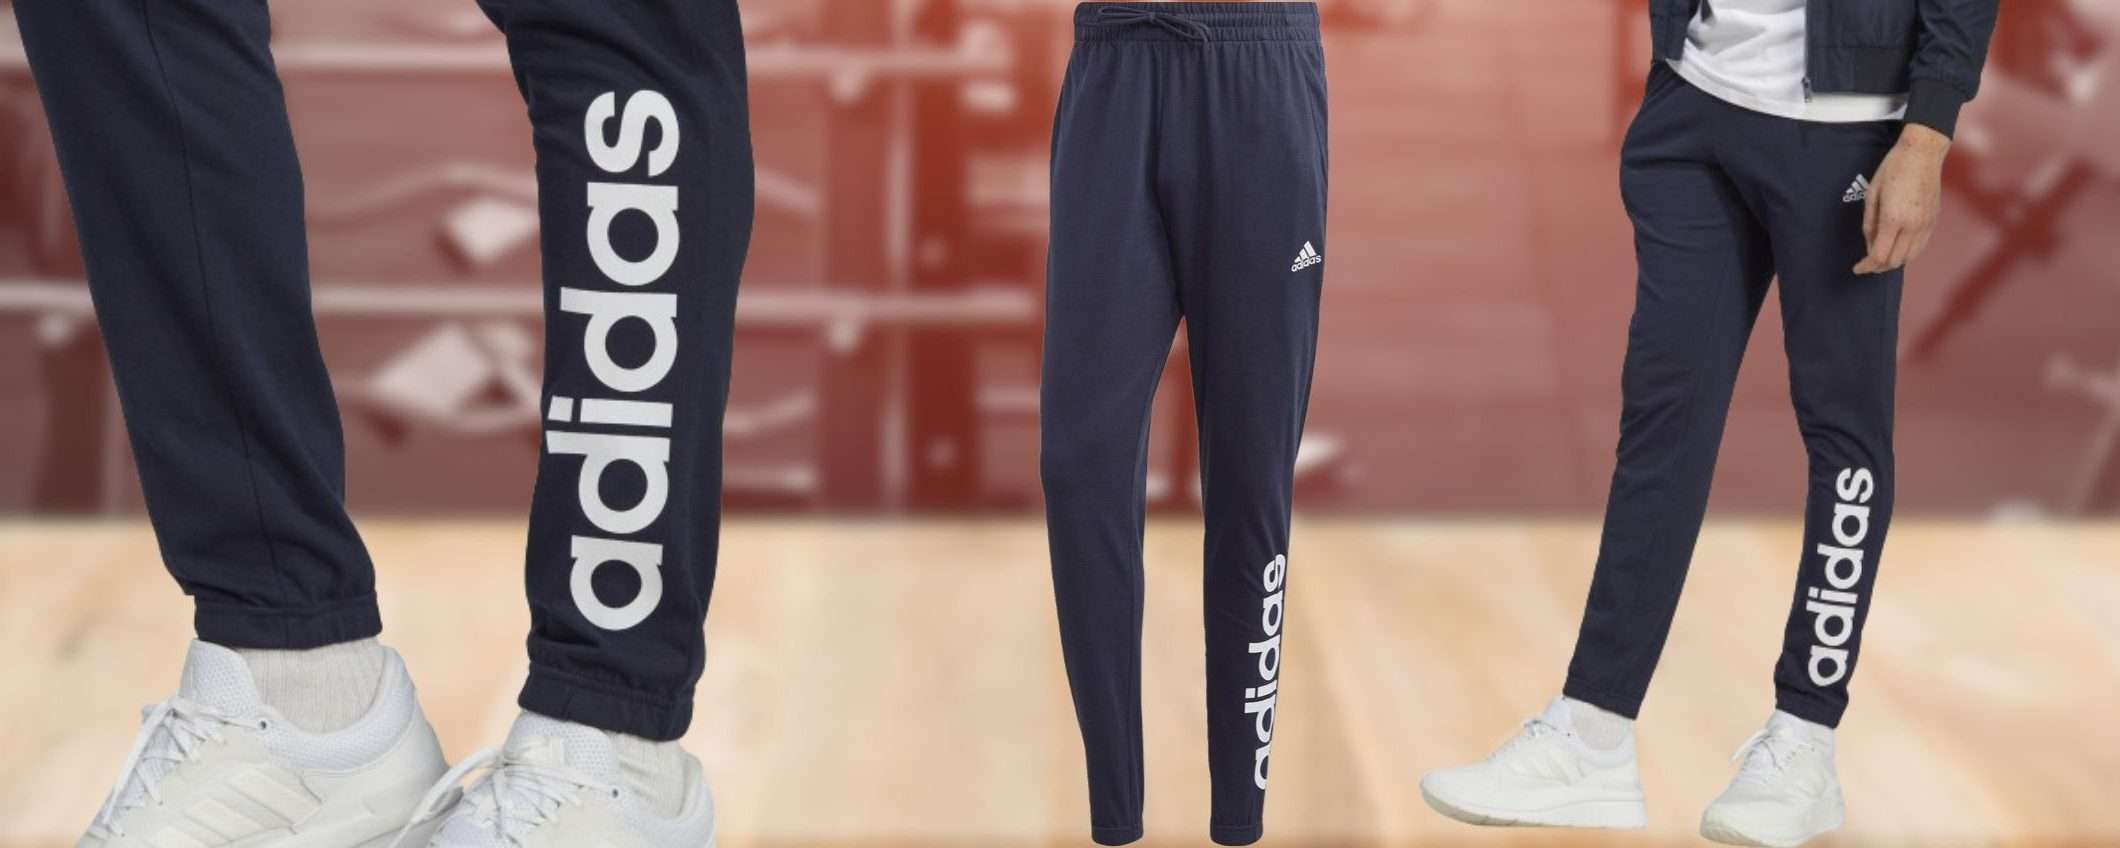 Pantalone Adidas a 20€ su Amazon: prezzo da SVUOTATUTTO, sconto 54%